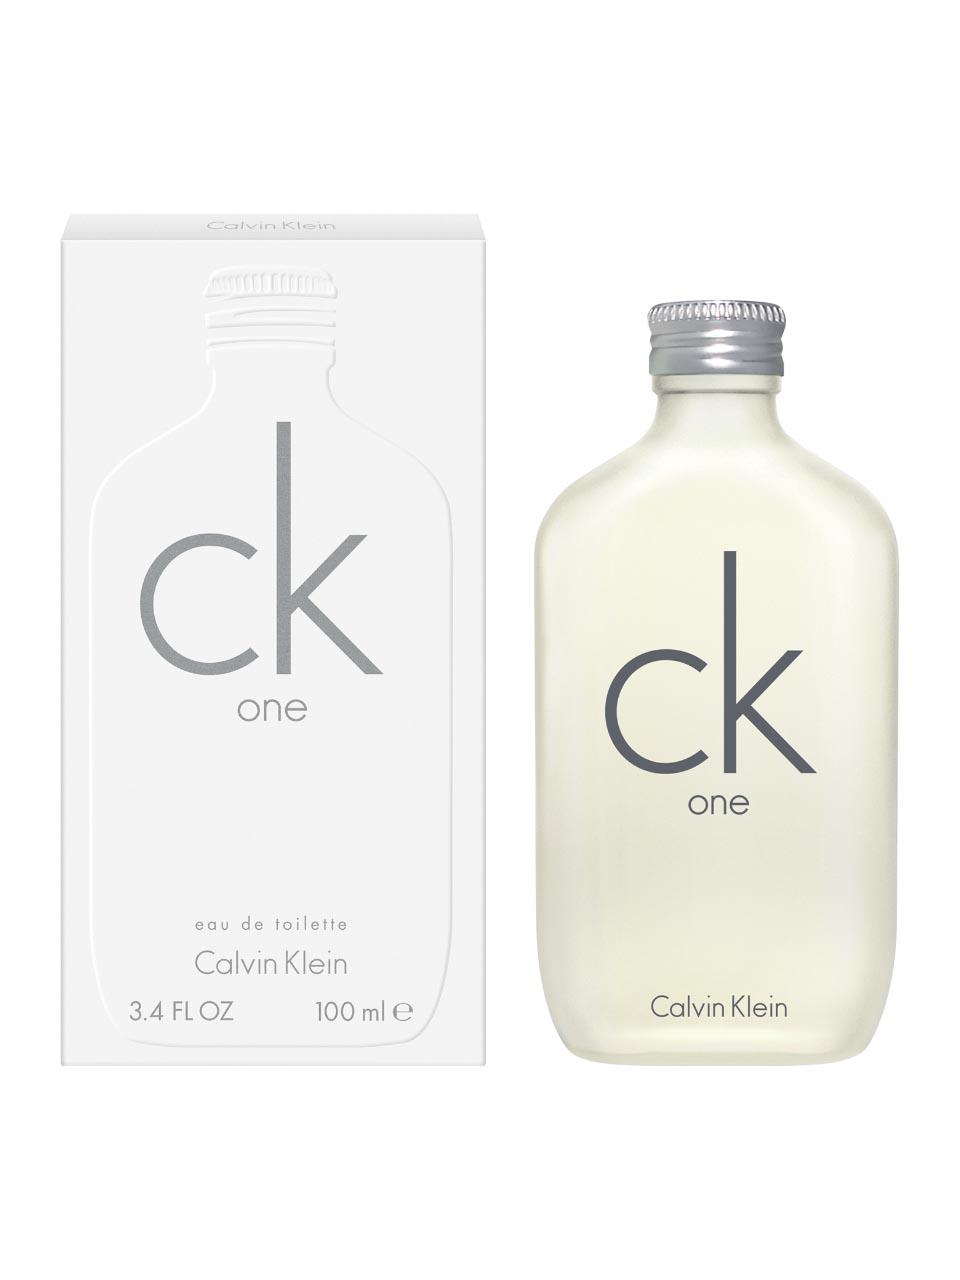 Le Parfumier - Calvin Klein Ck One Collector's Edition Eau de Toilette - Le  Parfumier Perfume Store